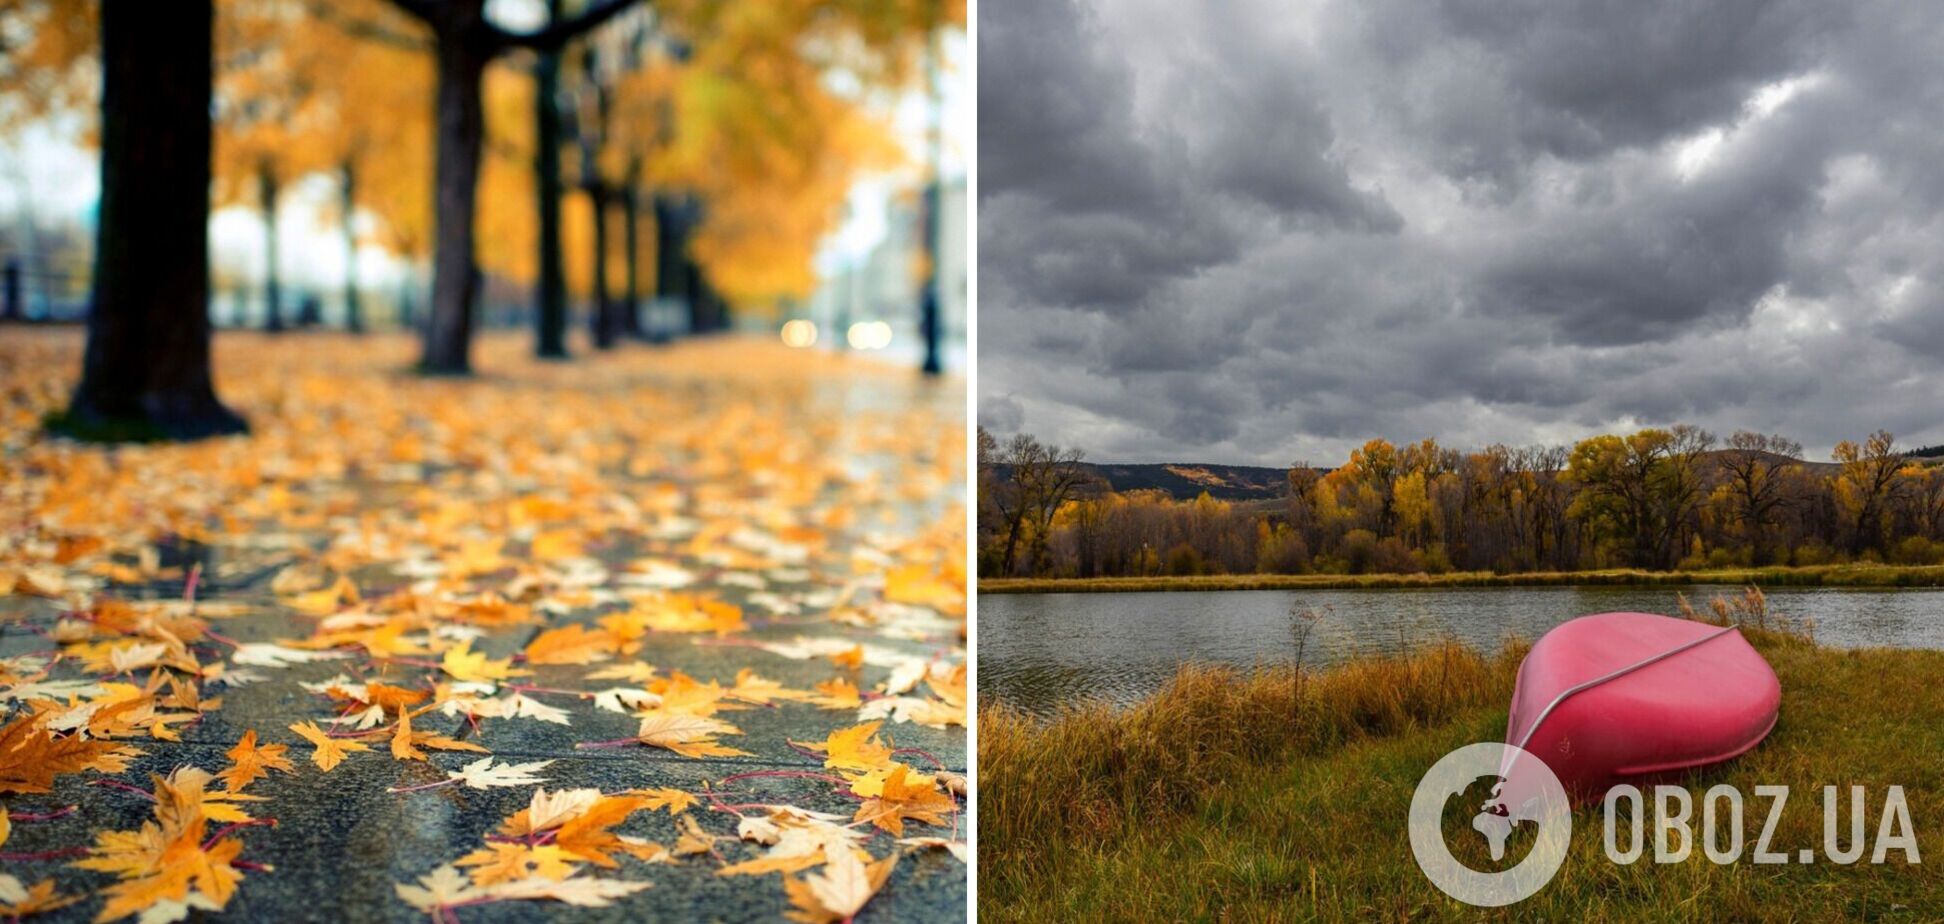 Облачно и местами дождь: первые выходные ноября начнутся в оттенках серого. Карта